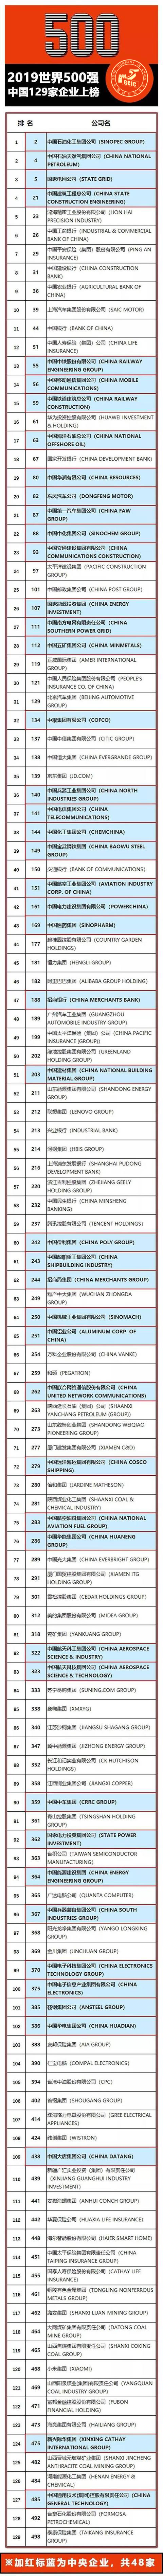 2019世界500强：129家中国企业 48家中央企业上榜